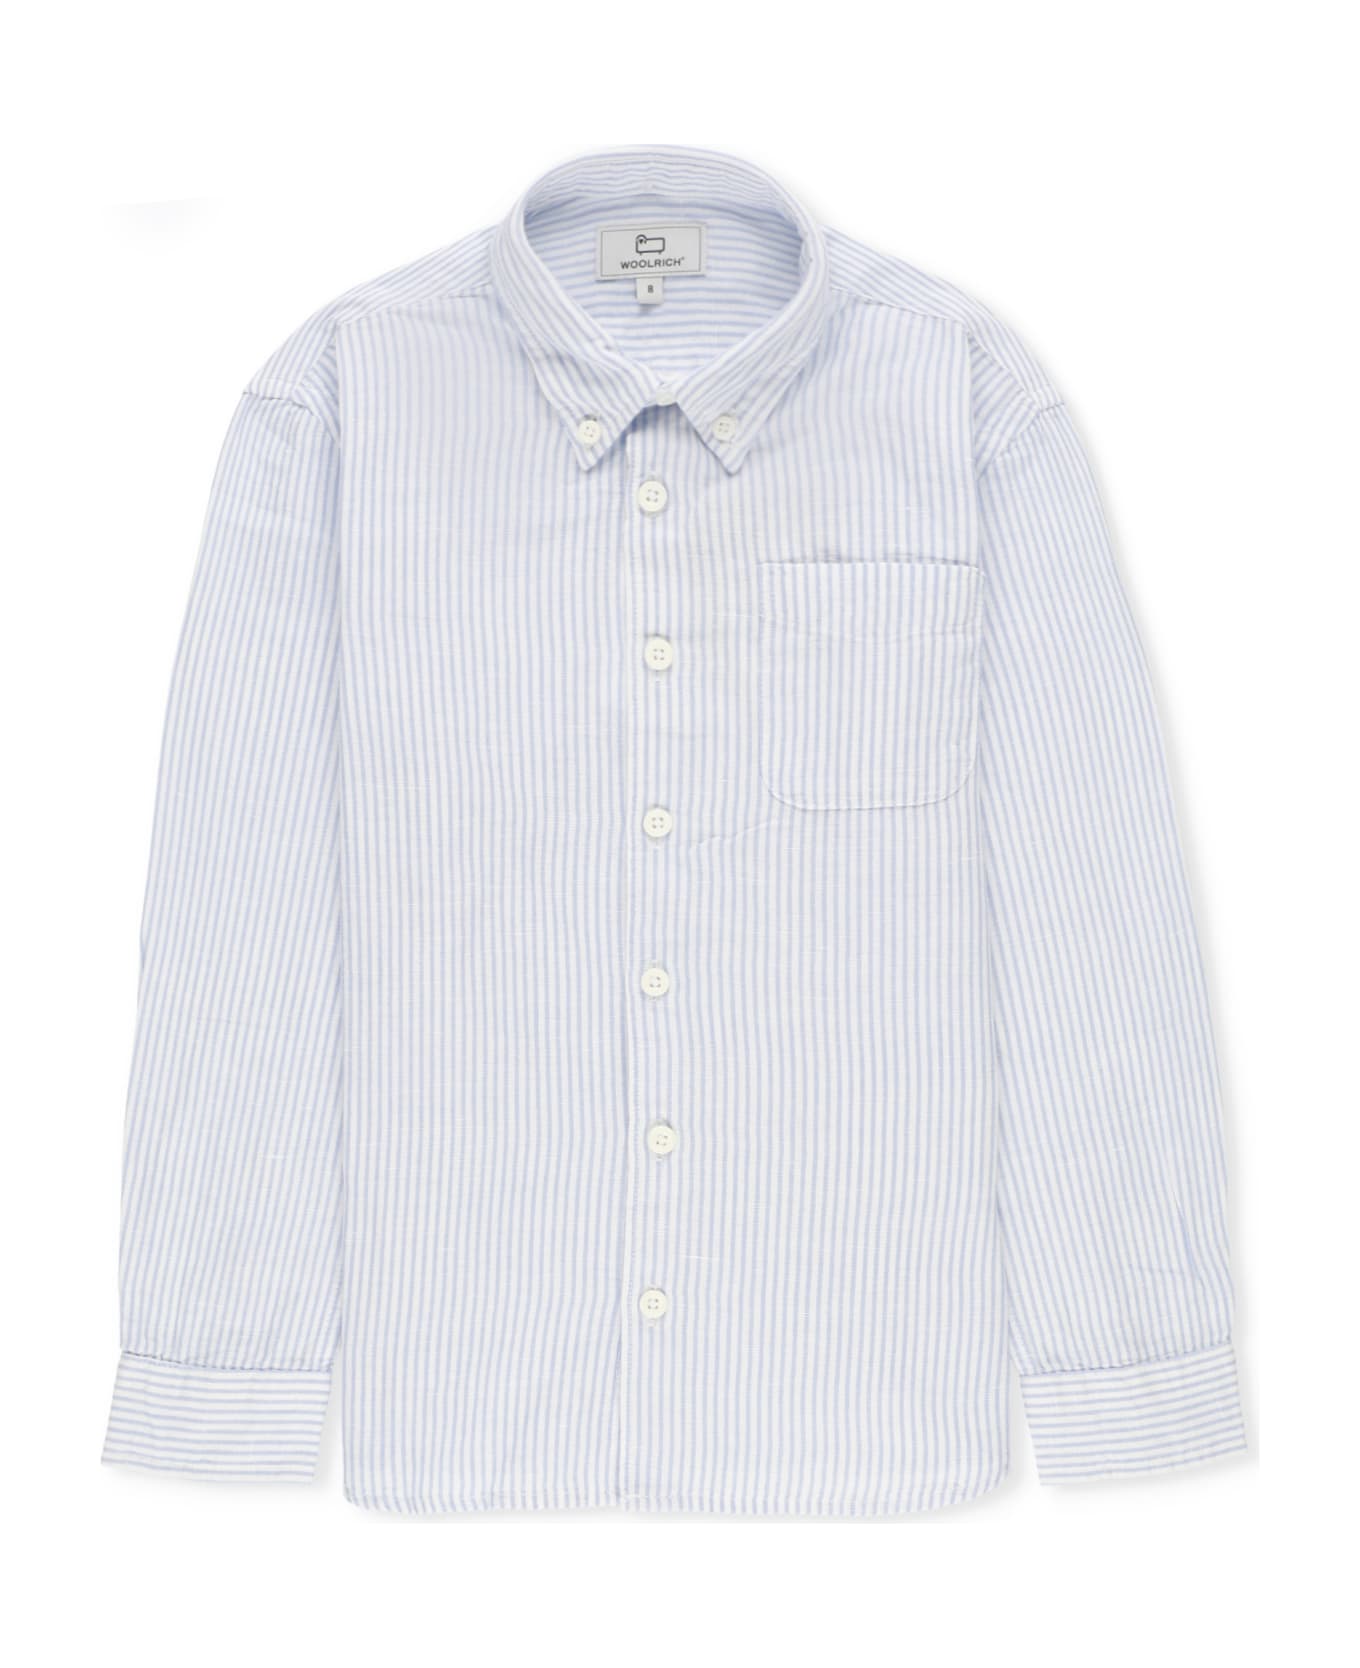 Woolrich Cotton And Linen Shirt - Light Blue